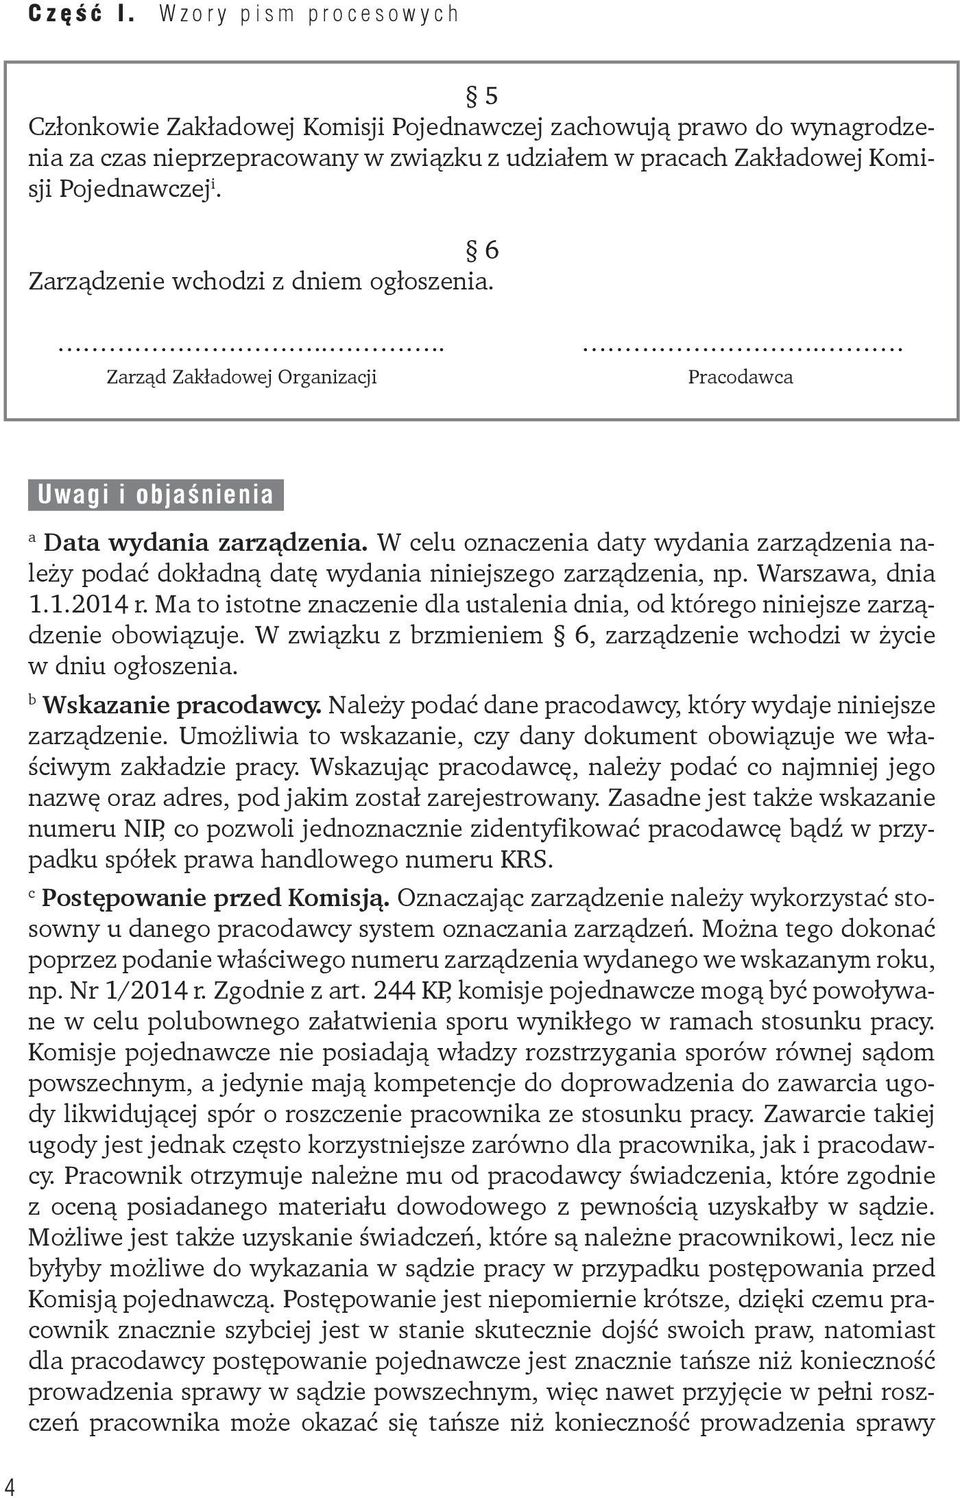 W celu oznaczenia daty wydania zarządzenia należy podać dokładną datę wydania niniejszego zarządzenia, np. Warszawa, dnia 1.1.2014 r.